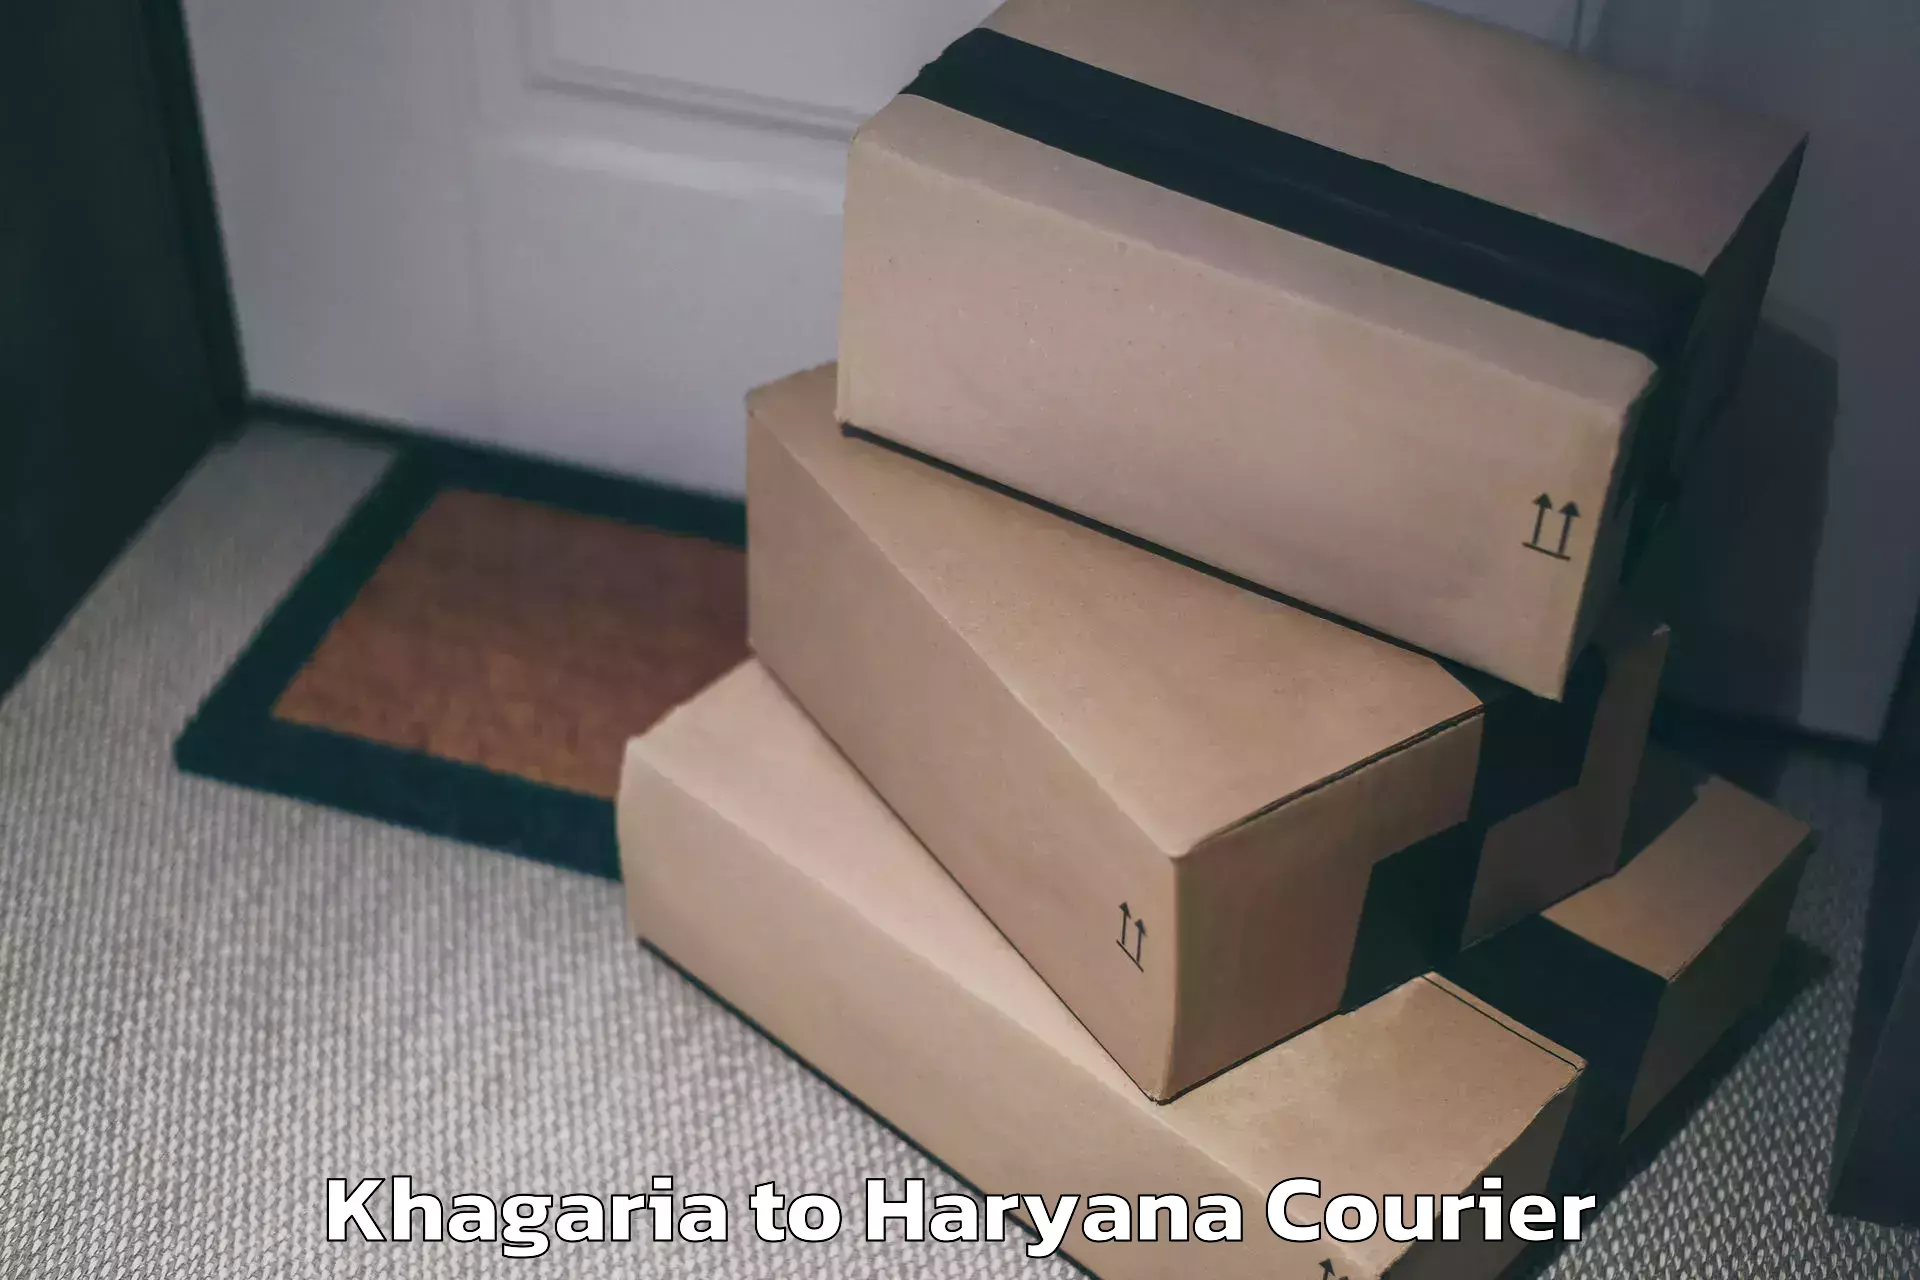 Personal effects shipping Khagaria to Gurugram